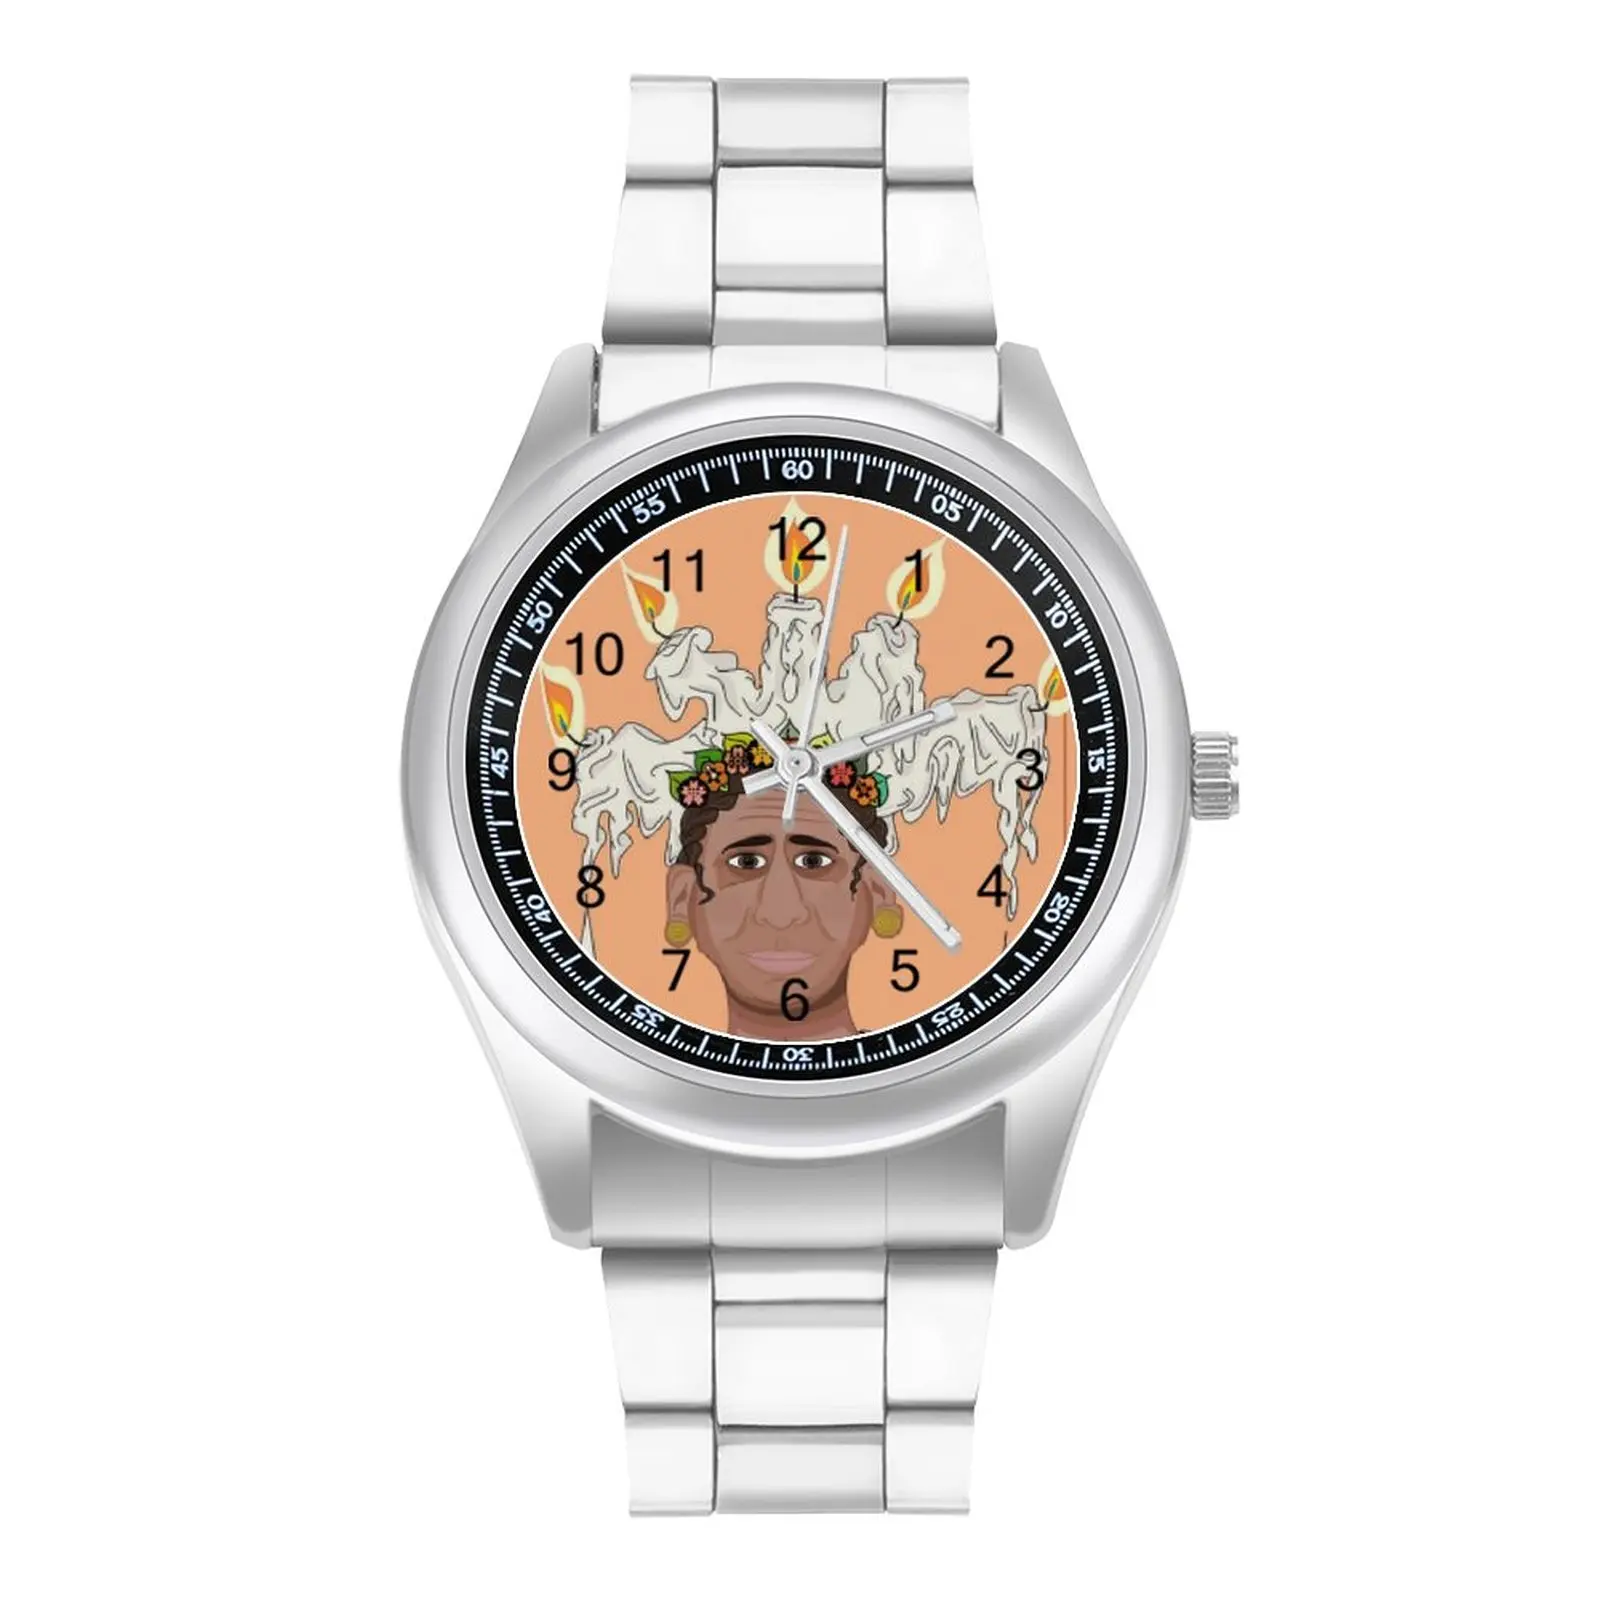 

Кварцевые часы Tarot, фото наручные часы в стиле ретро, стальные, купить Фитнес, подростковые наручные часы